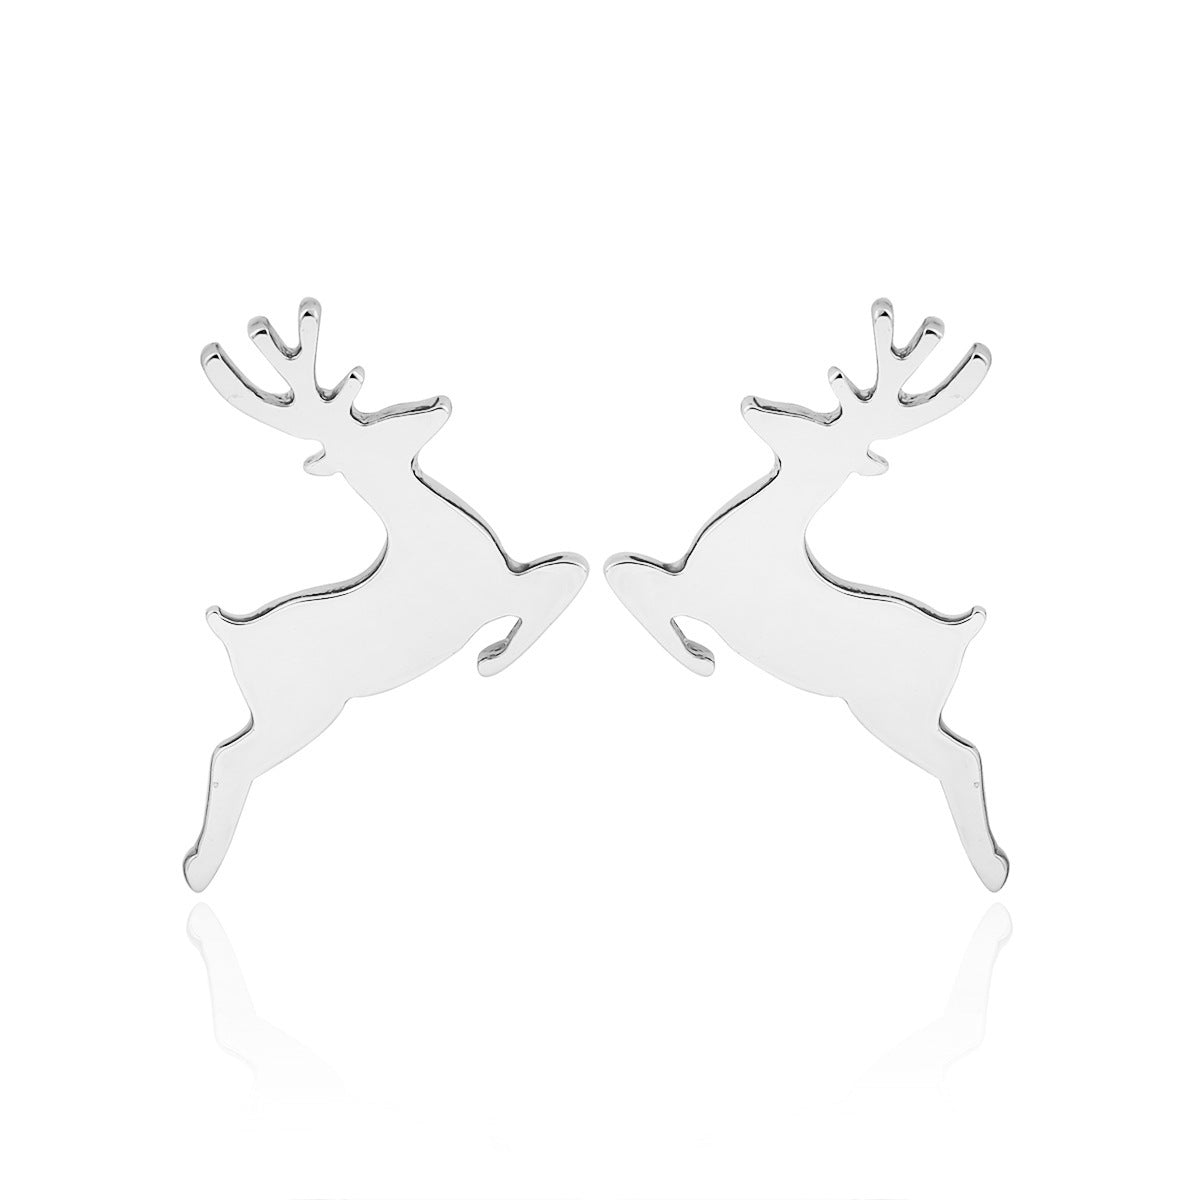 Reindeer Silver Stainless Steel Stud Earrings